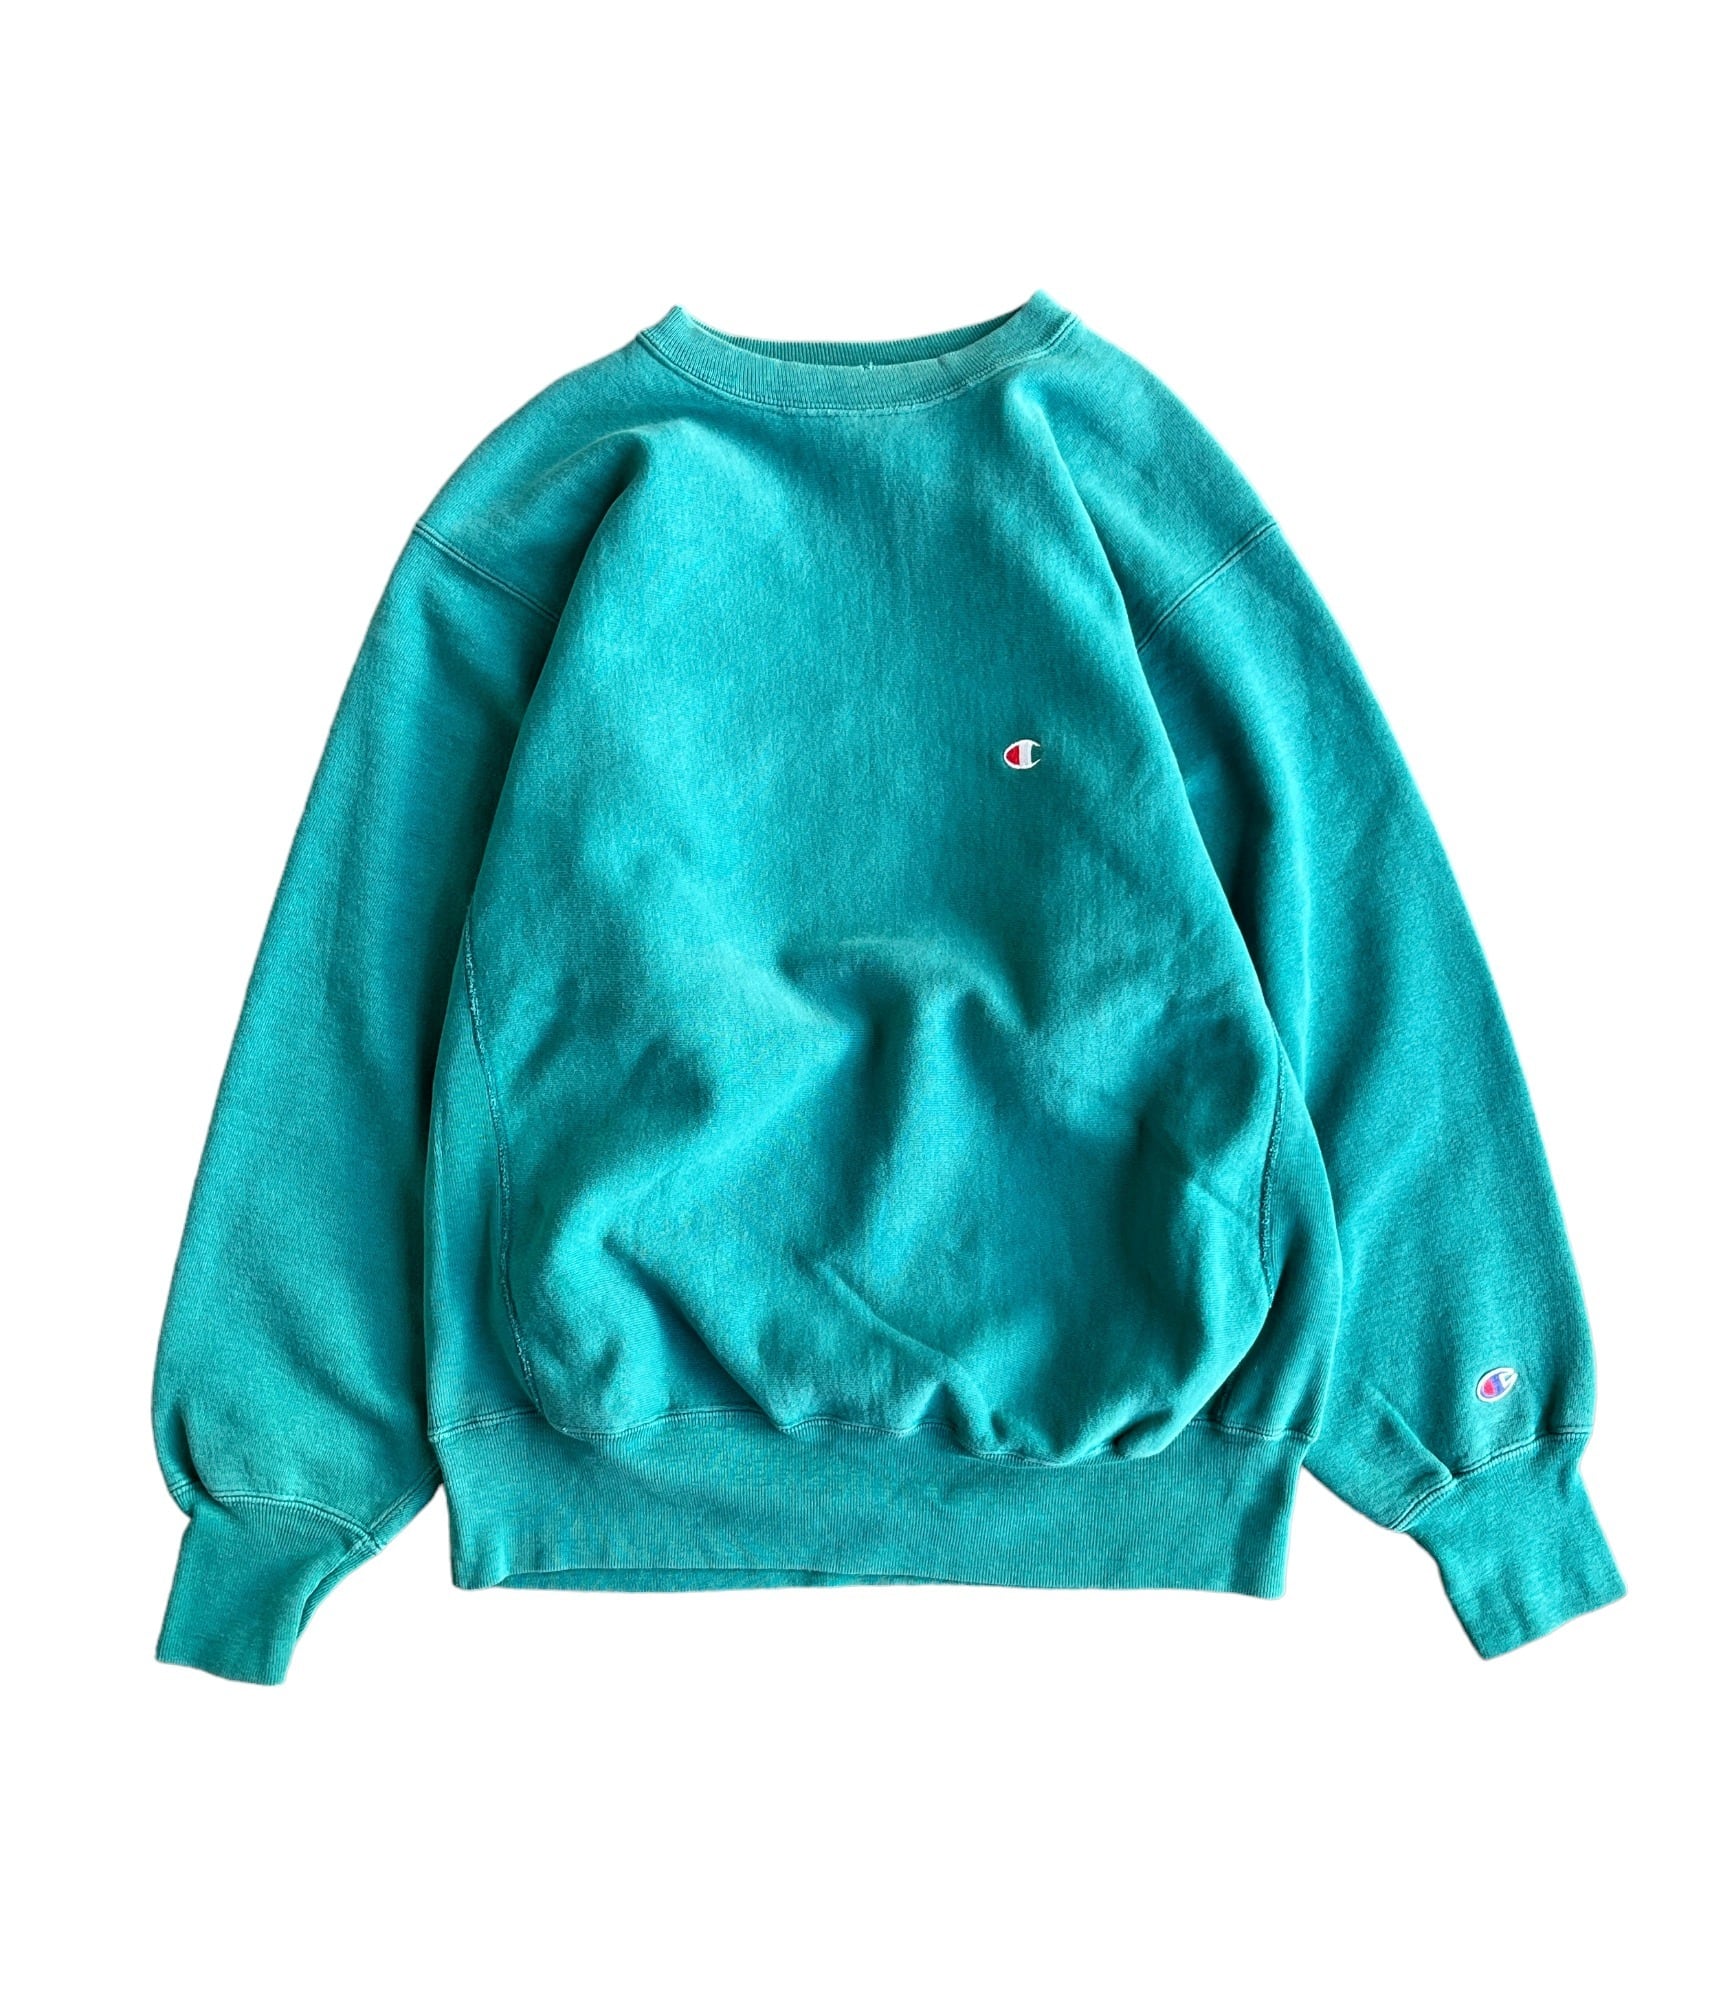 【カニエウエスト着用】90s Champion sweatshirt XL